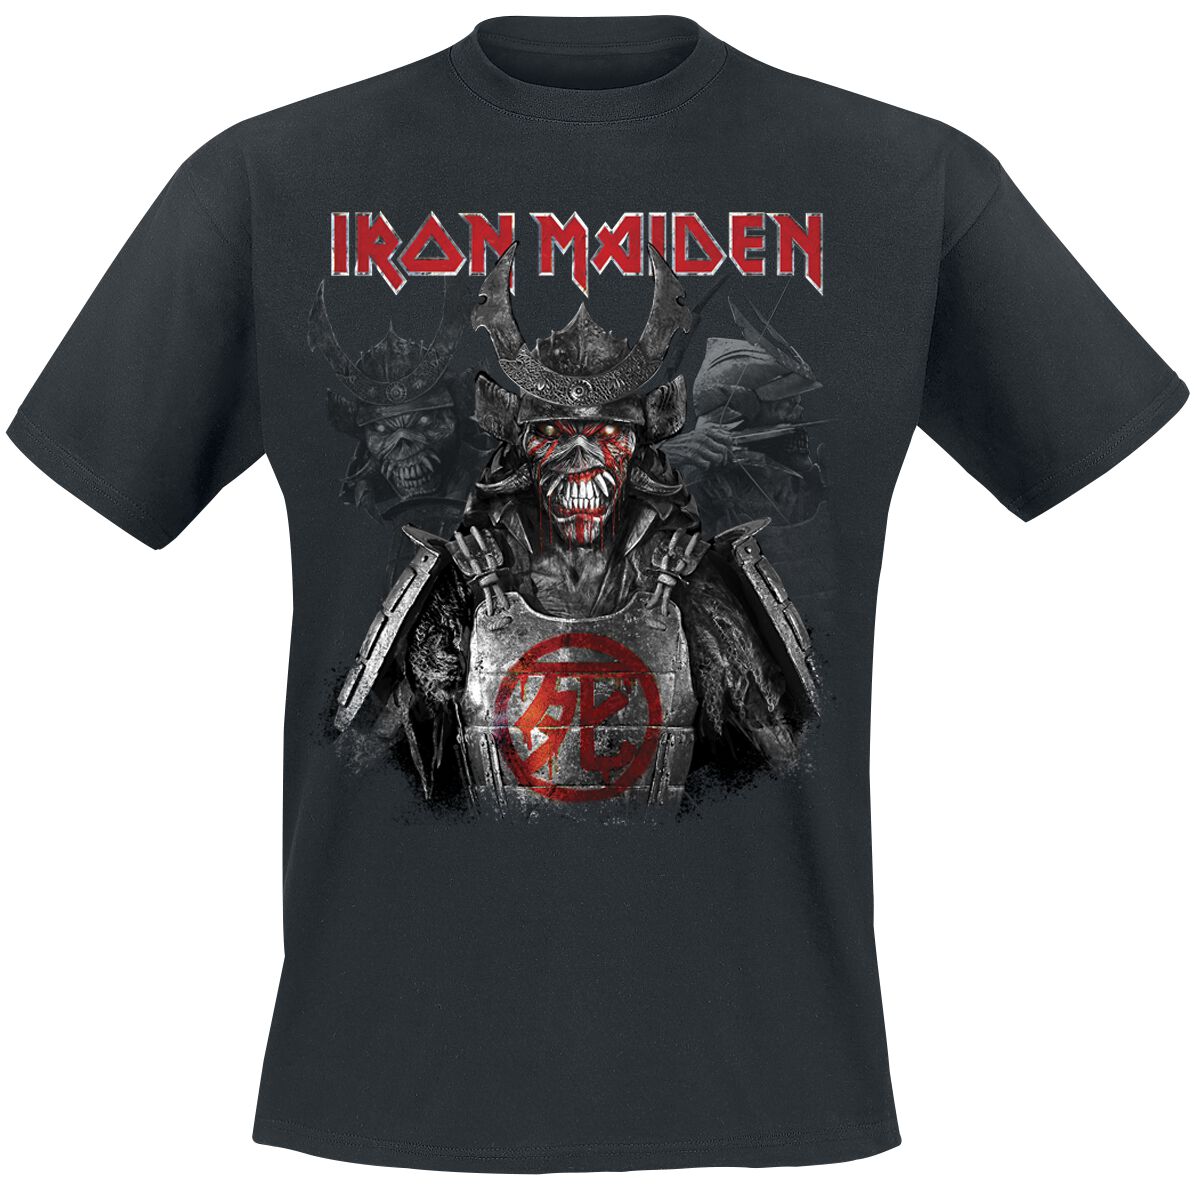 Iron Maiden T-Shirt - Senjutsu Heads - S bis 4XL - für Männer - Größe 4XL - schwarz  - Lizenziertes Merchandise!